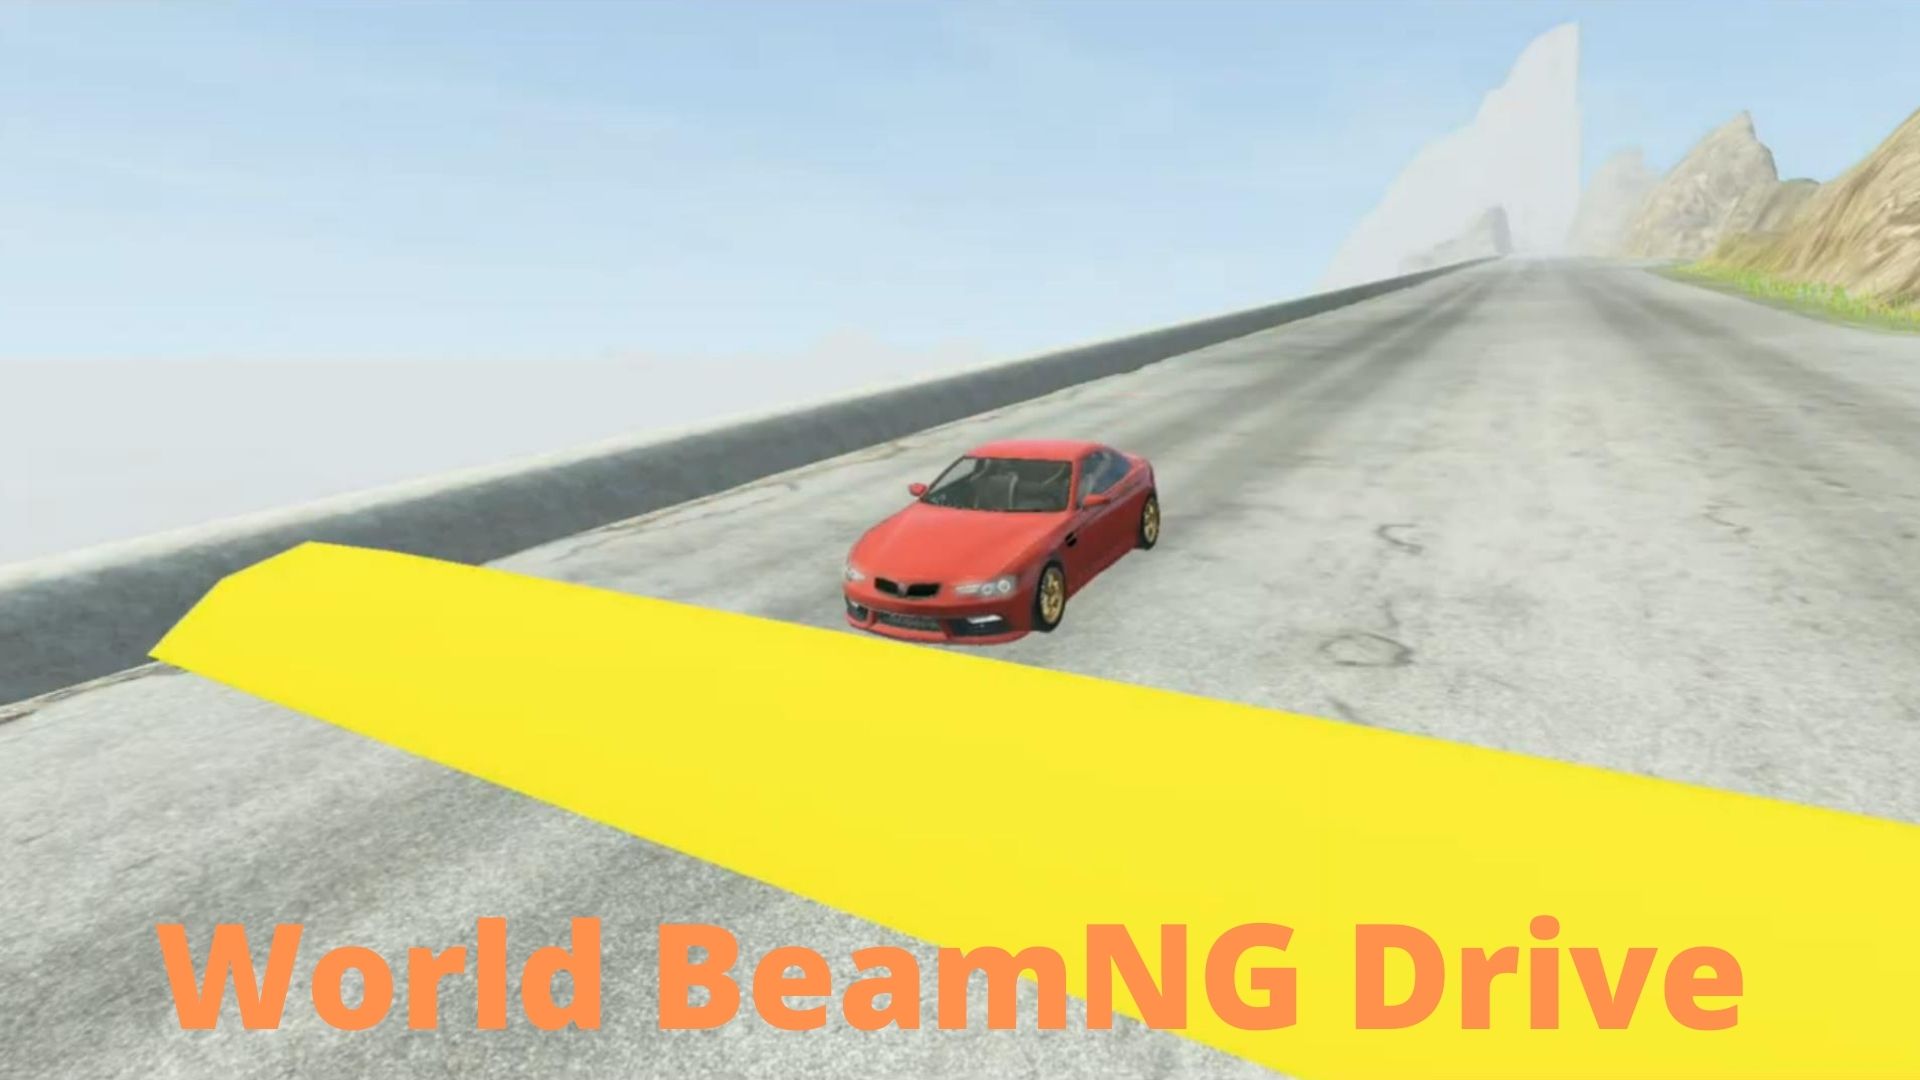 Машины против лежачего полицейского #2 - BeamNG Drive | World BeamNG Drive